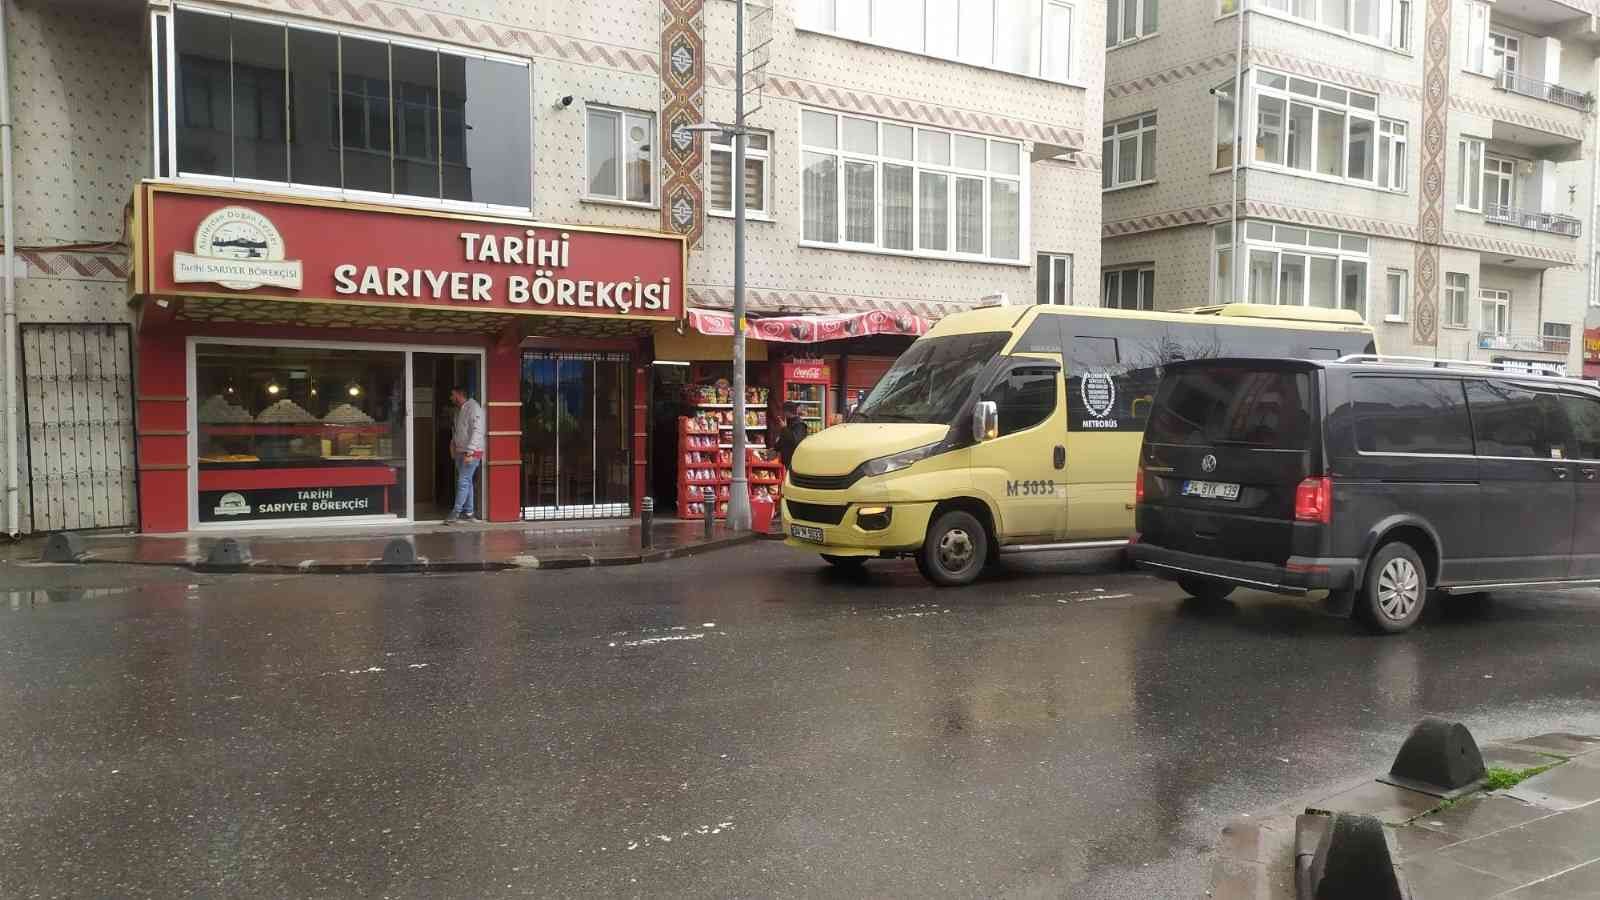 Küçükçekmece’de feci kaza kamerada #istanbul